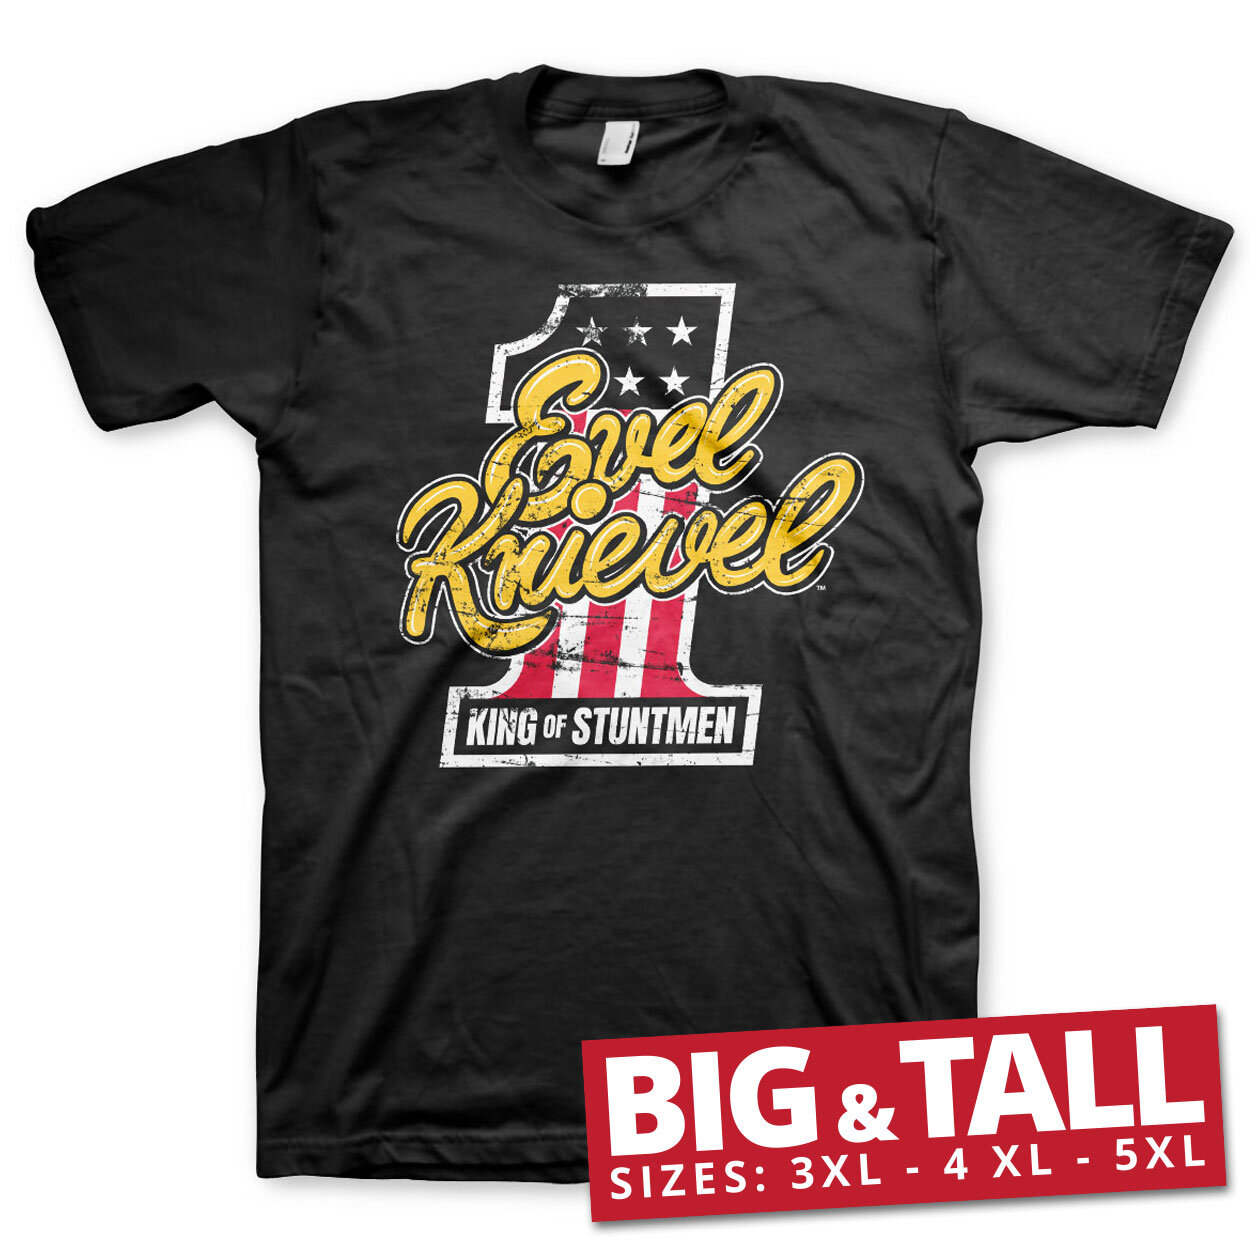 King Of Stuntmen Big & Tall T-Shirt